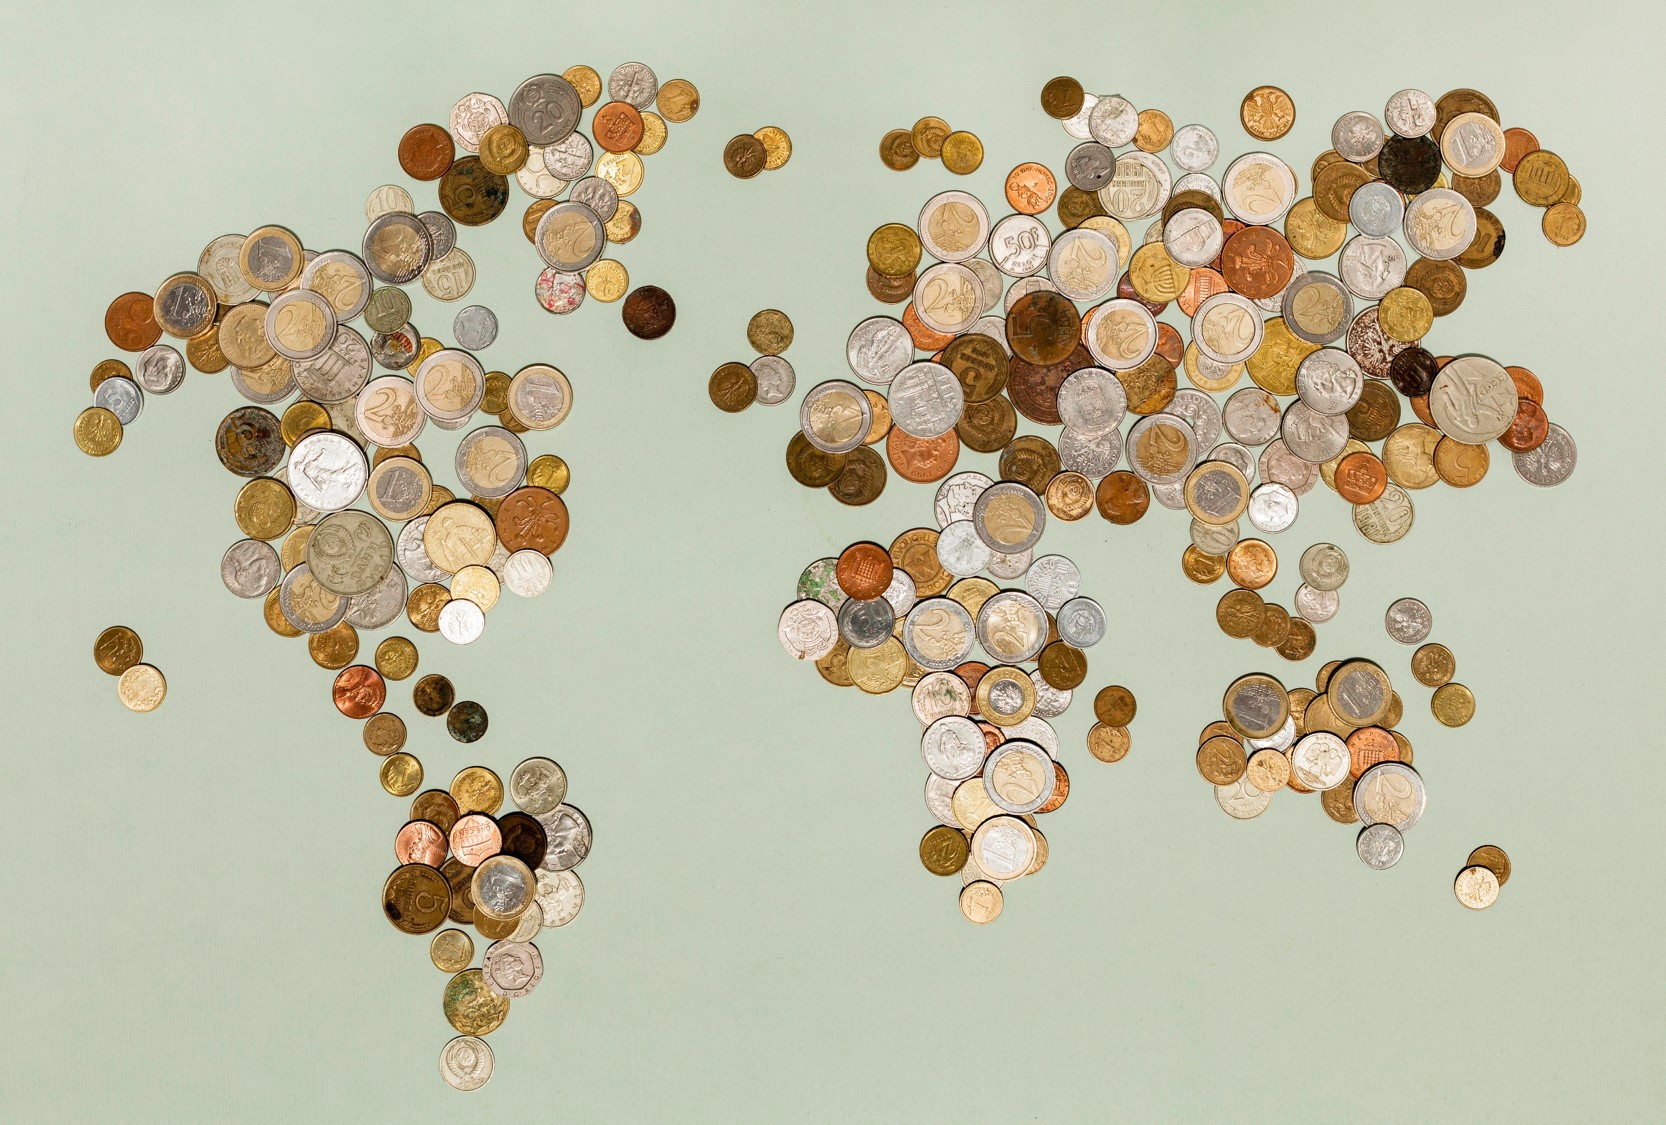 widok na mapę świata utworzoną z monet, układ monet przypomina zarys kontynentów.